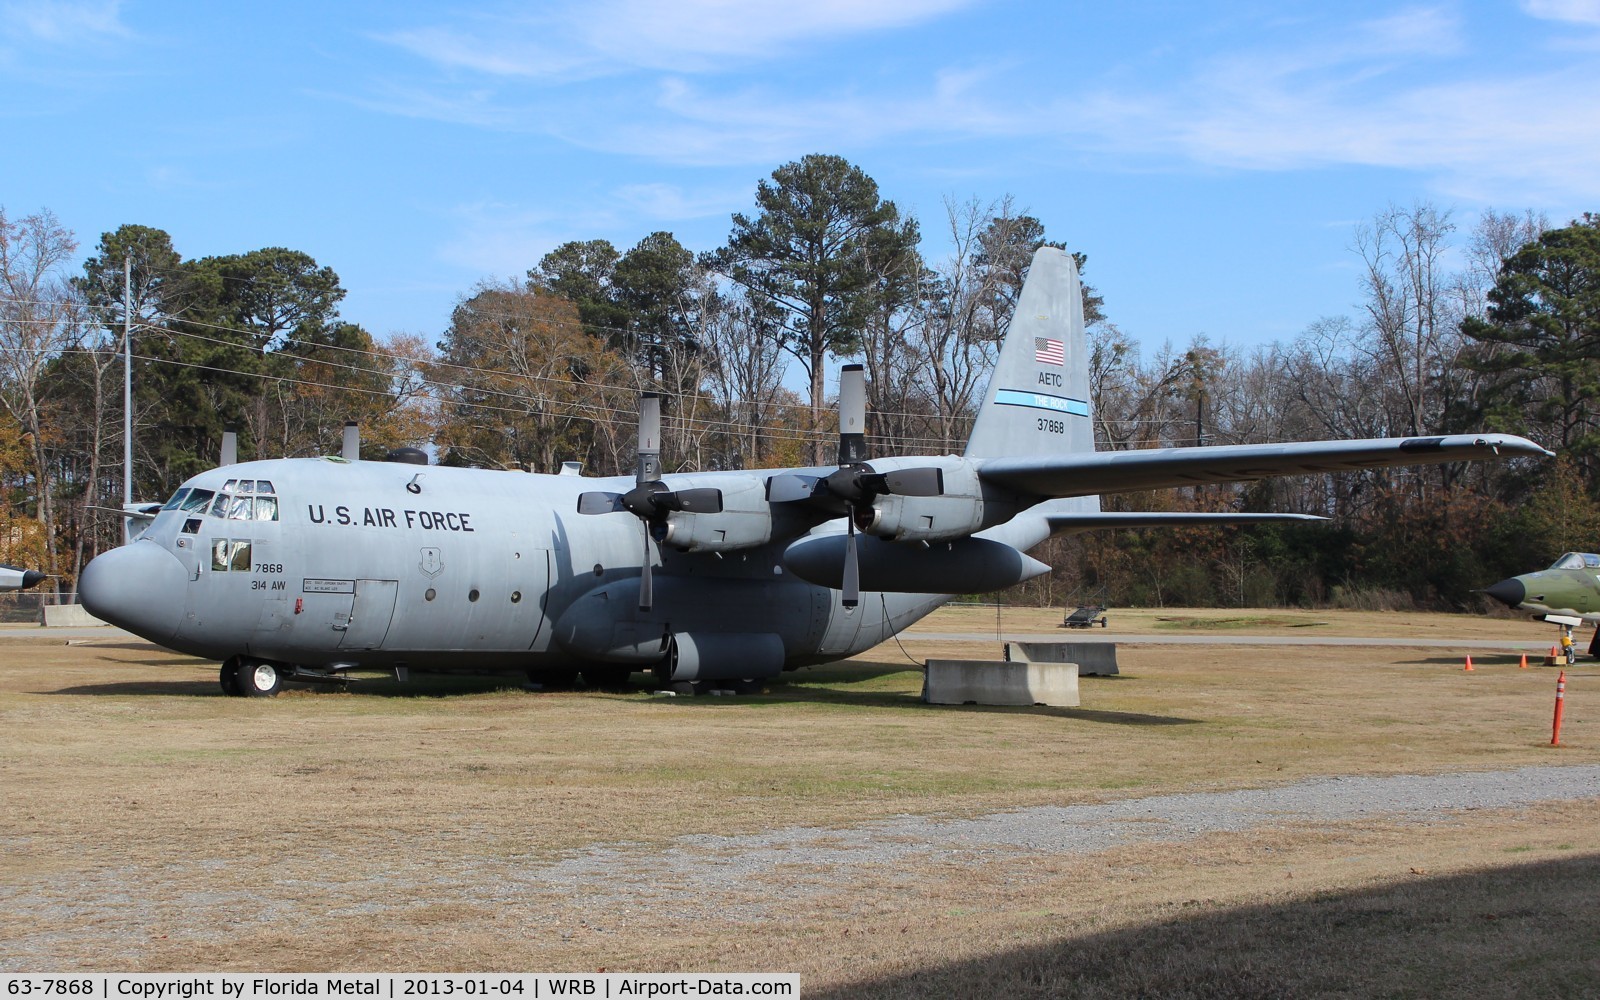 63-7868, Lockheed C-130E Hercules C/N 382-3938, C-130E Hercules